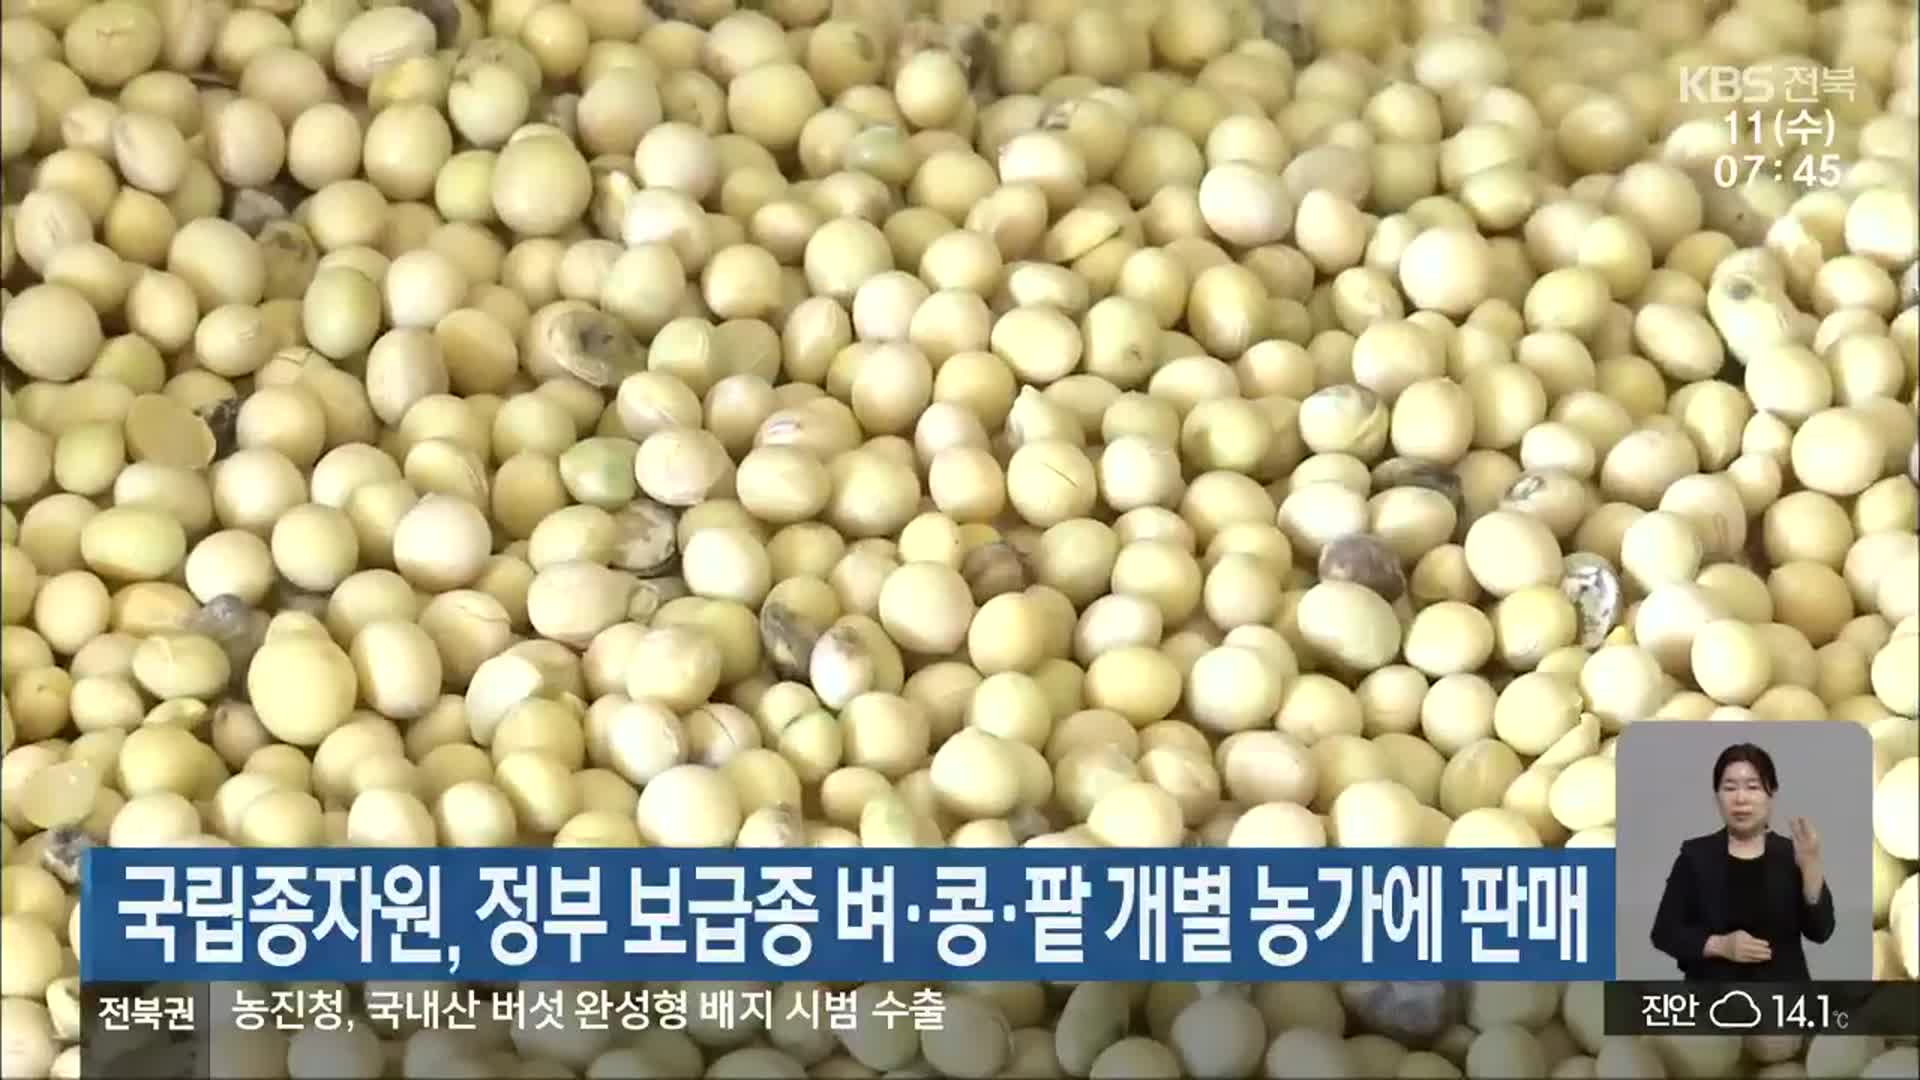 국립종자원, 정부 보급종 벼·콩·팥 개별 농가에 판매